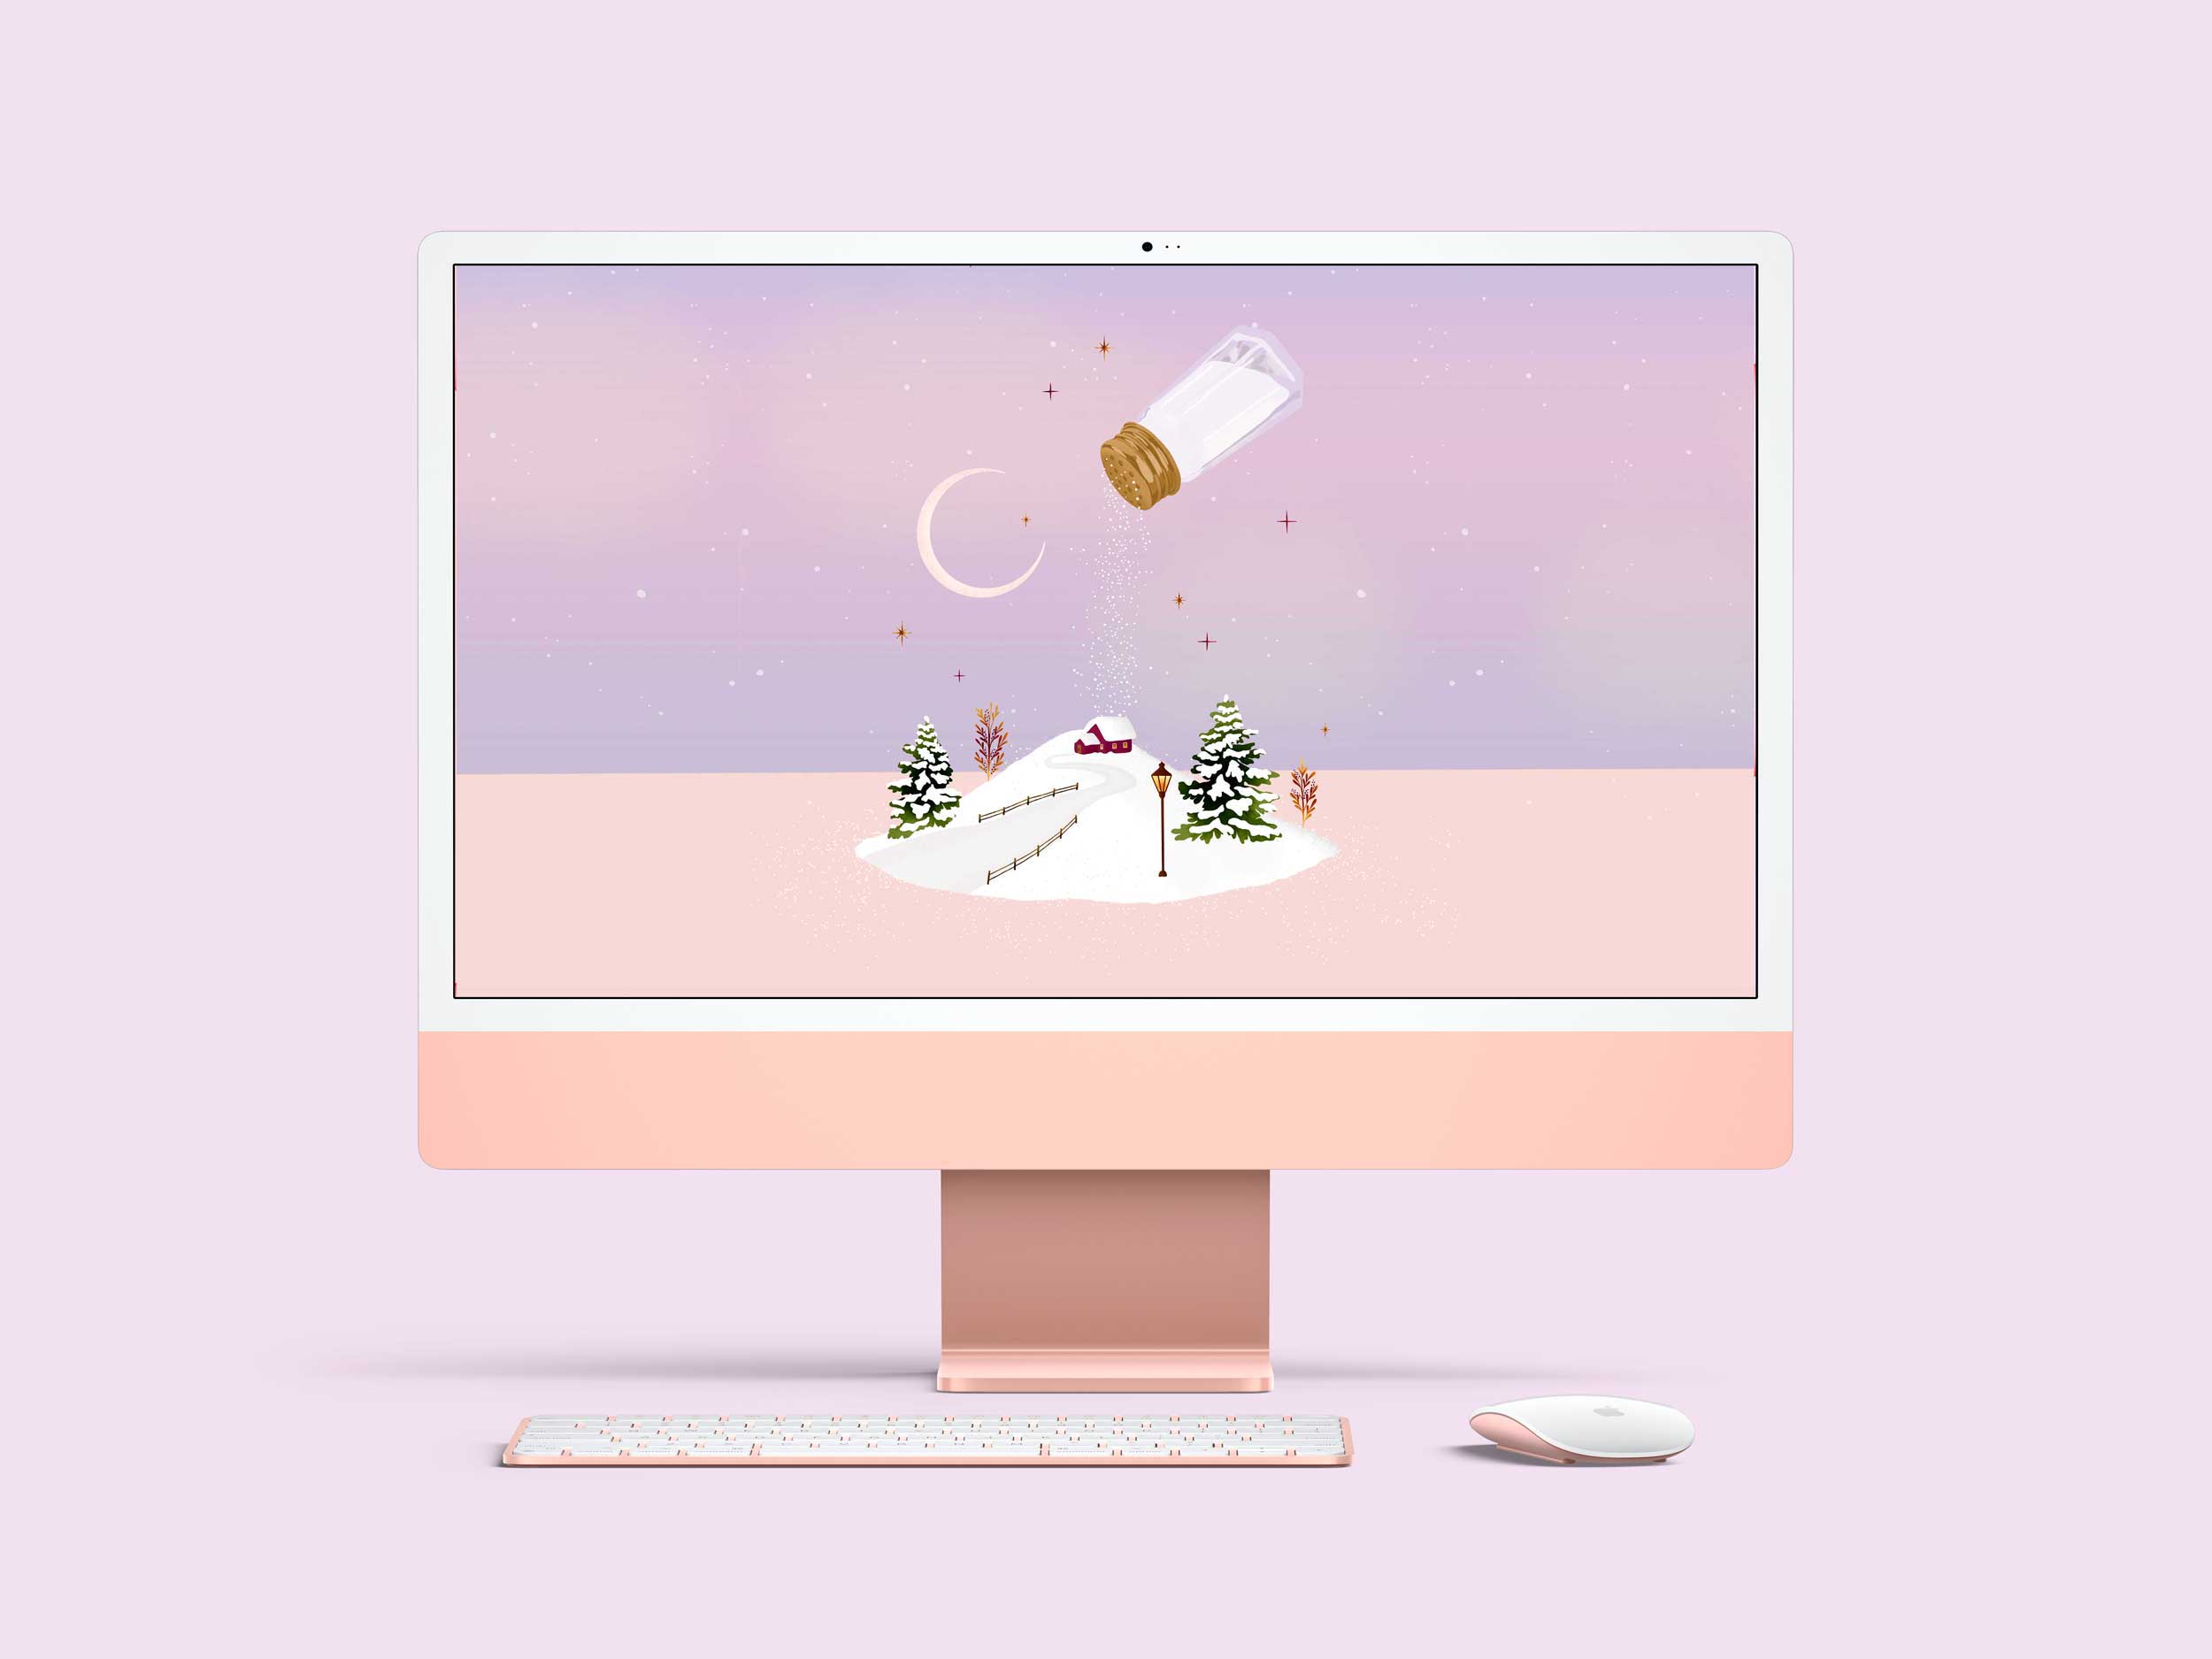 Salt shaker winter festive desktop, phone and tablet wallpaper